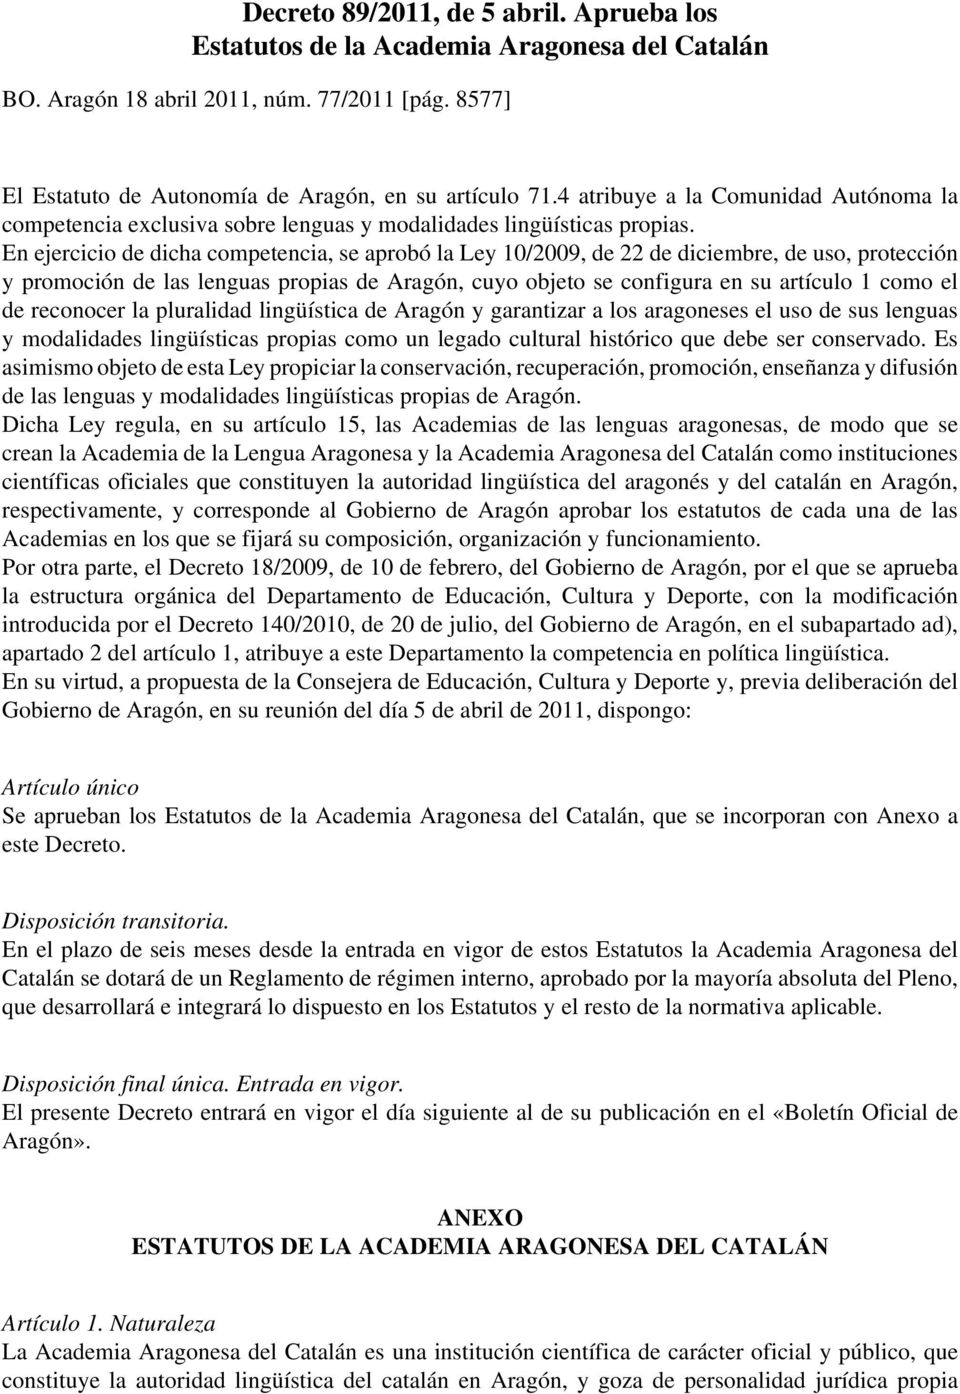 En ejercicio de dicha competencia, se aprobó la Ley 10/2009, de 22 de diciembre, de uso, protección y promoción de las lenguas propias de Aragón, cuyo objeto se configura en su artículo 1 como el de